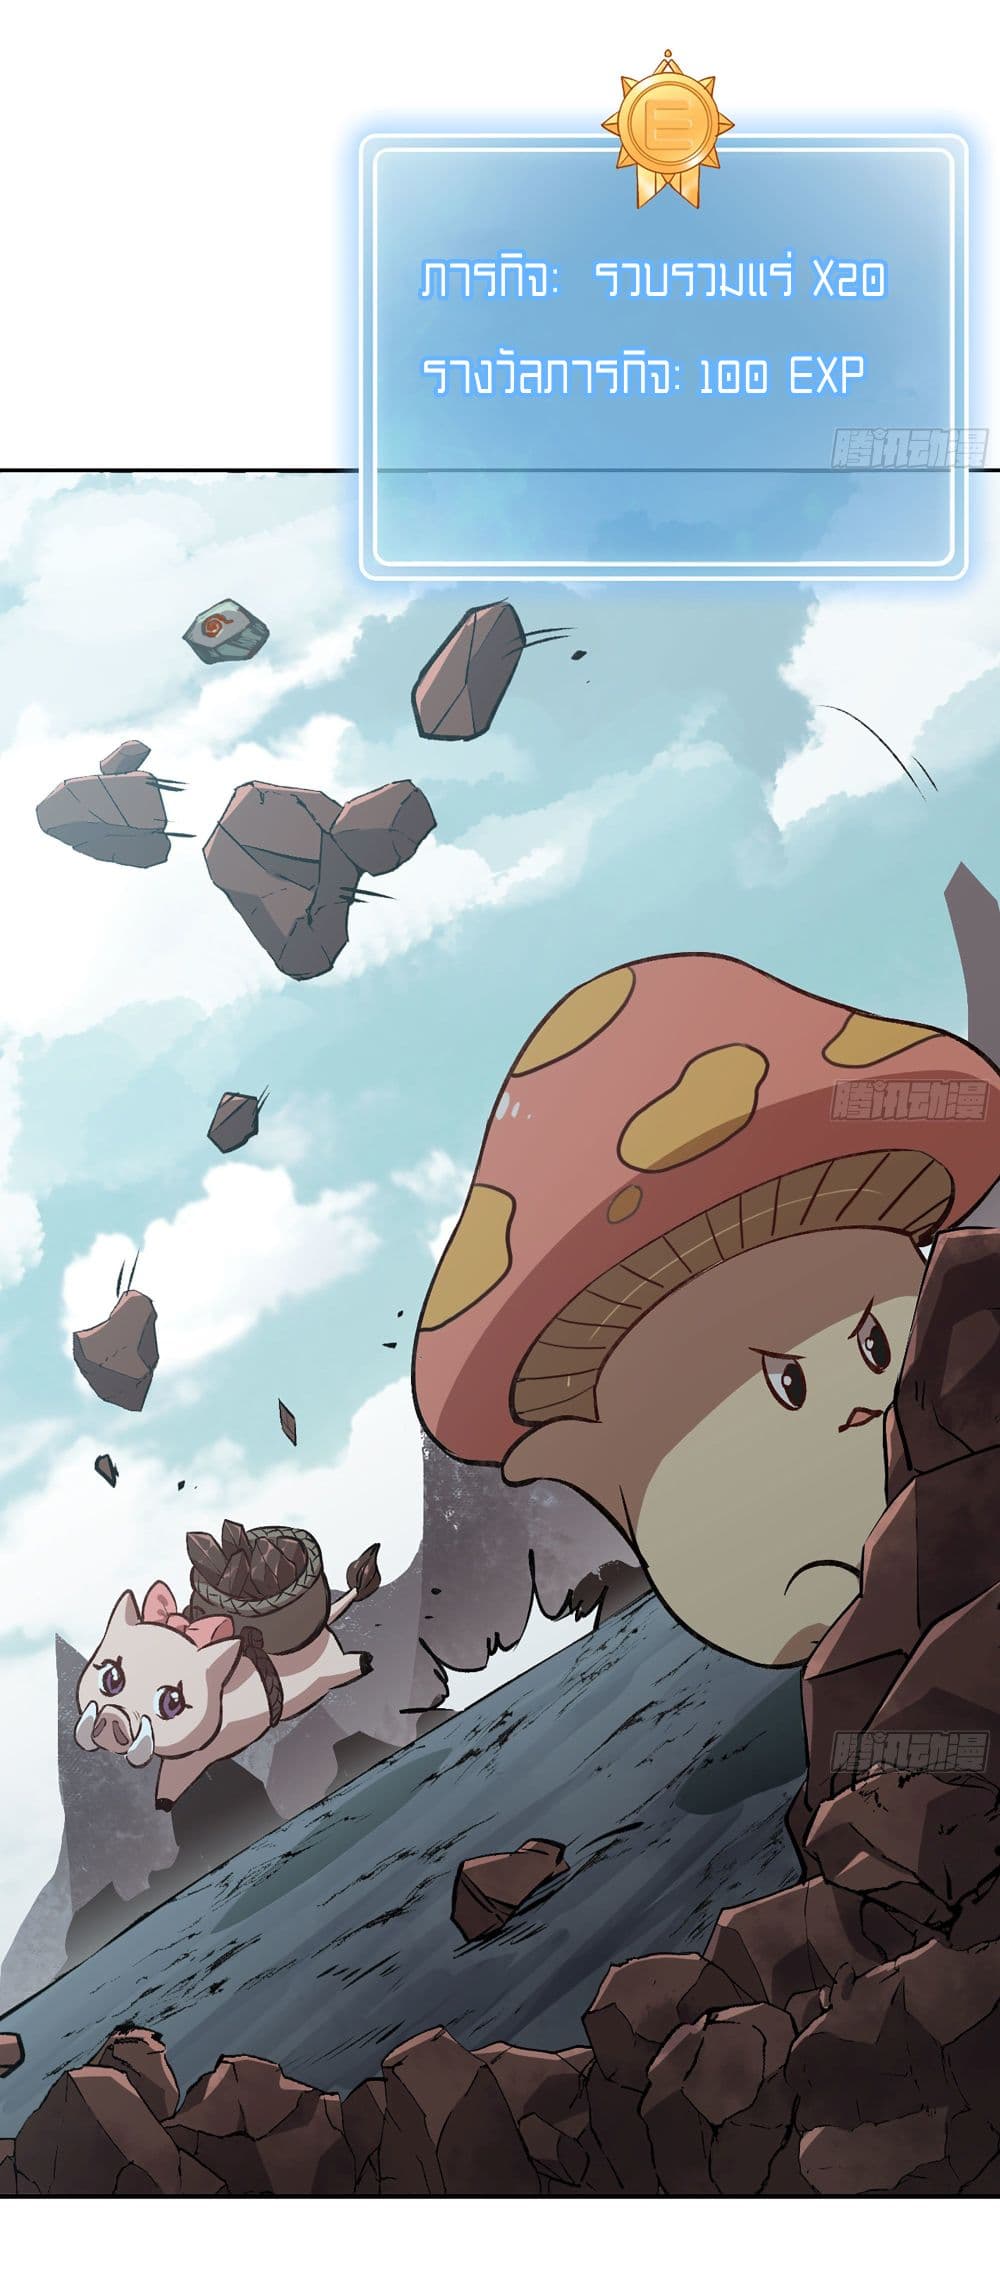 Mushroom Brave 14 04